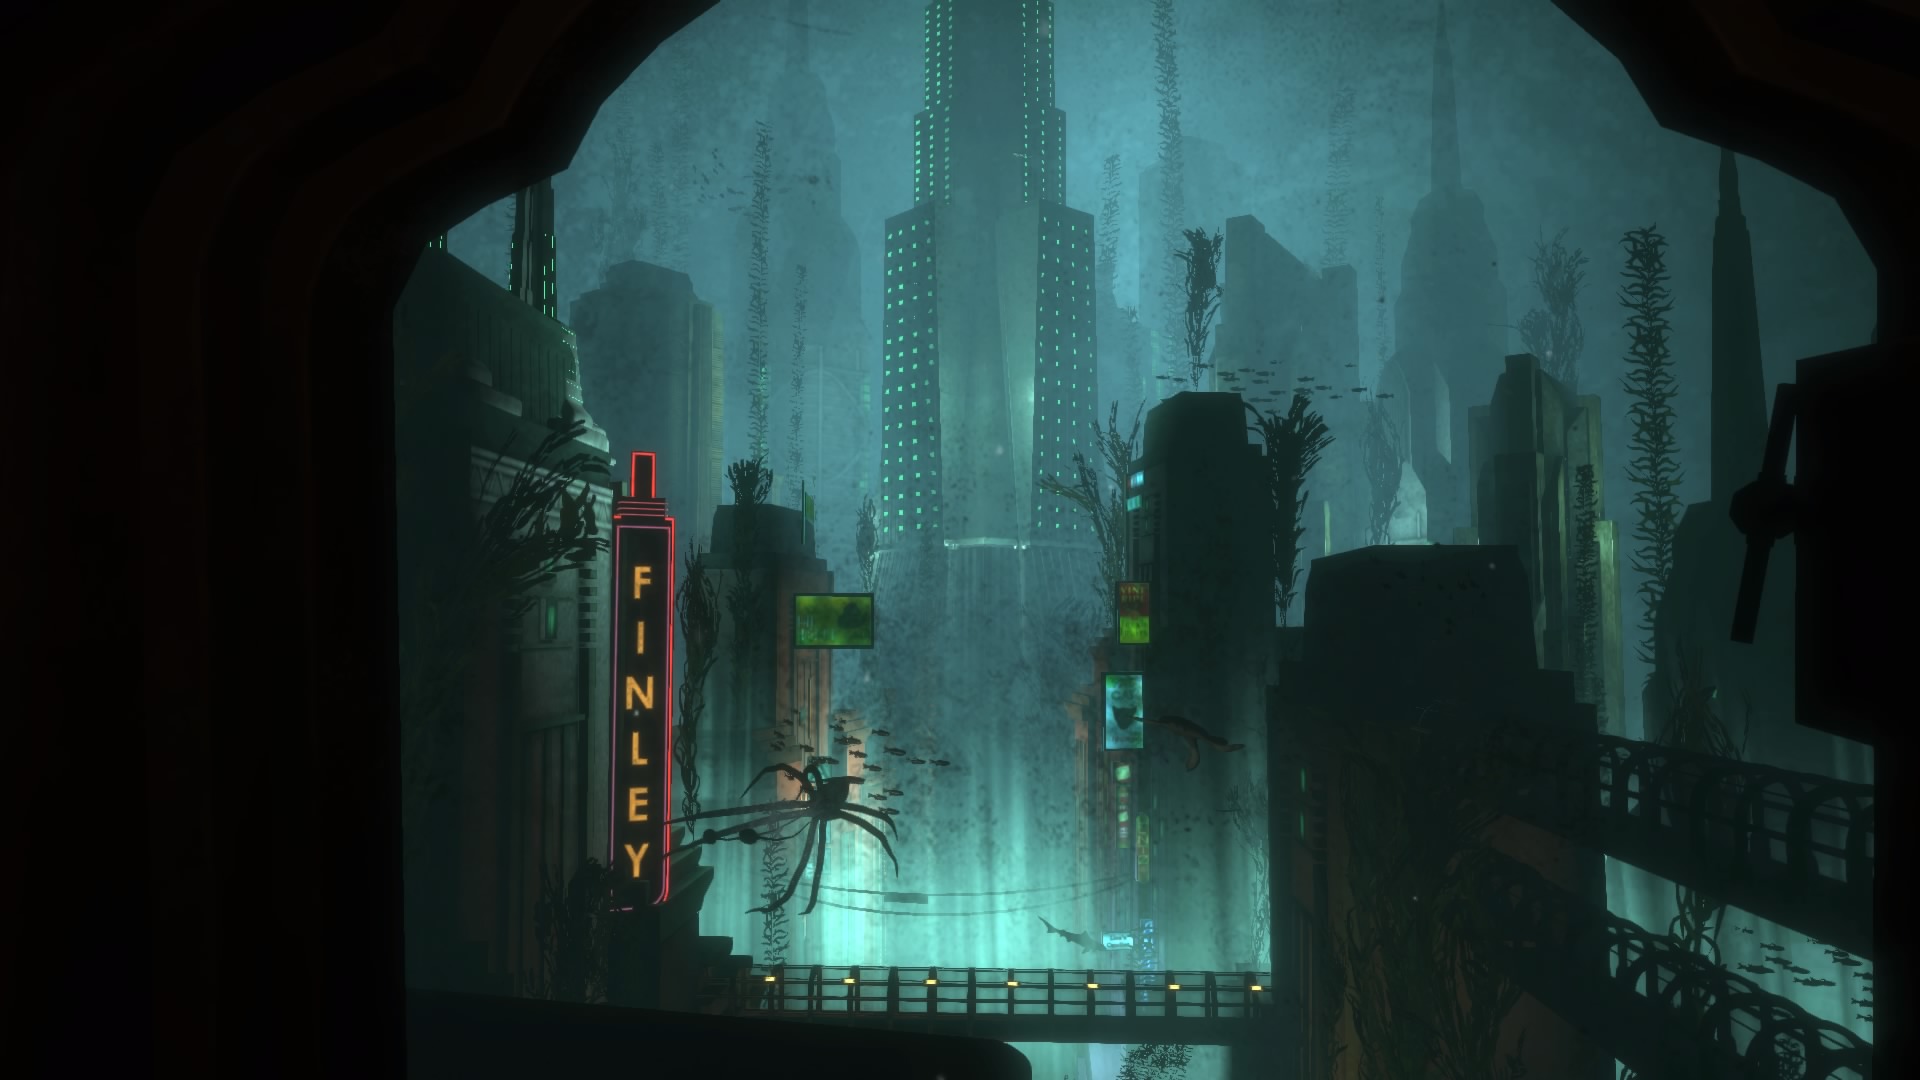 BioShock Remastered Collection te lleva a Rapture y Columbia en